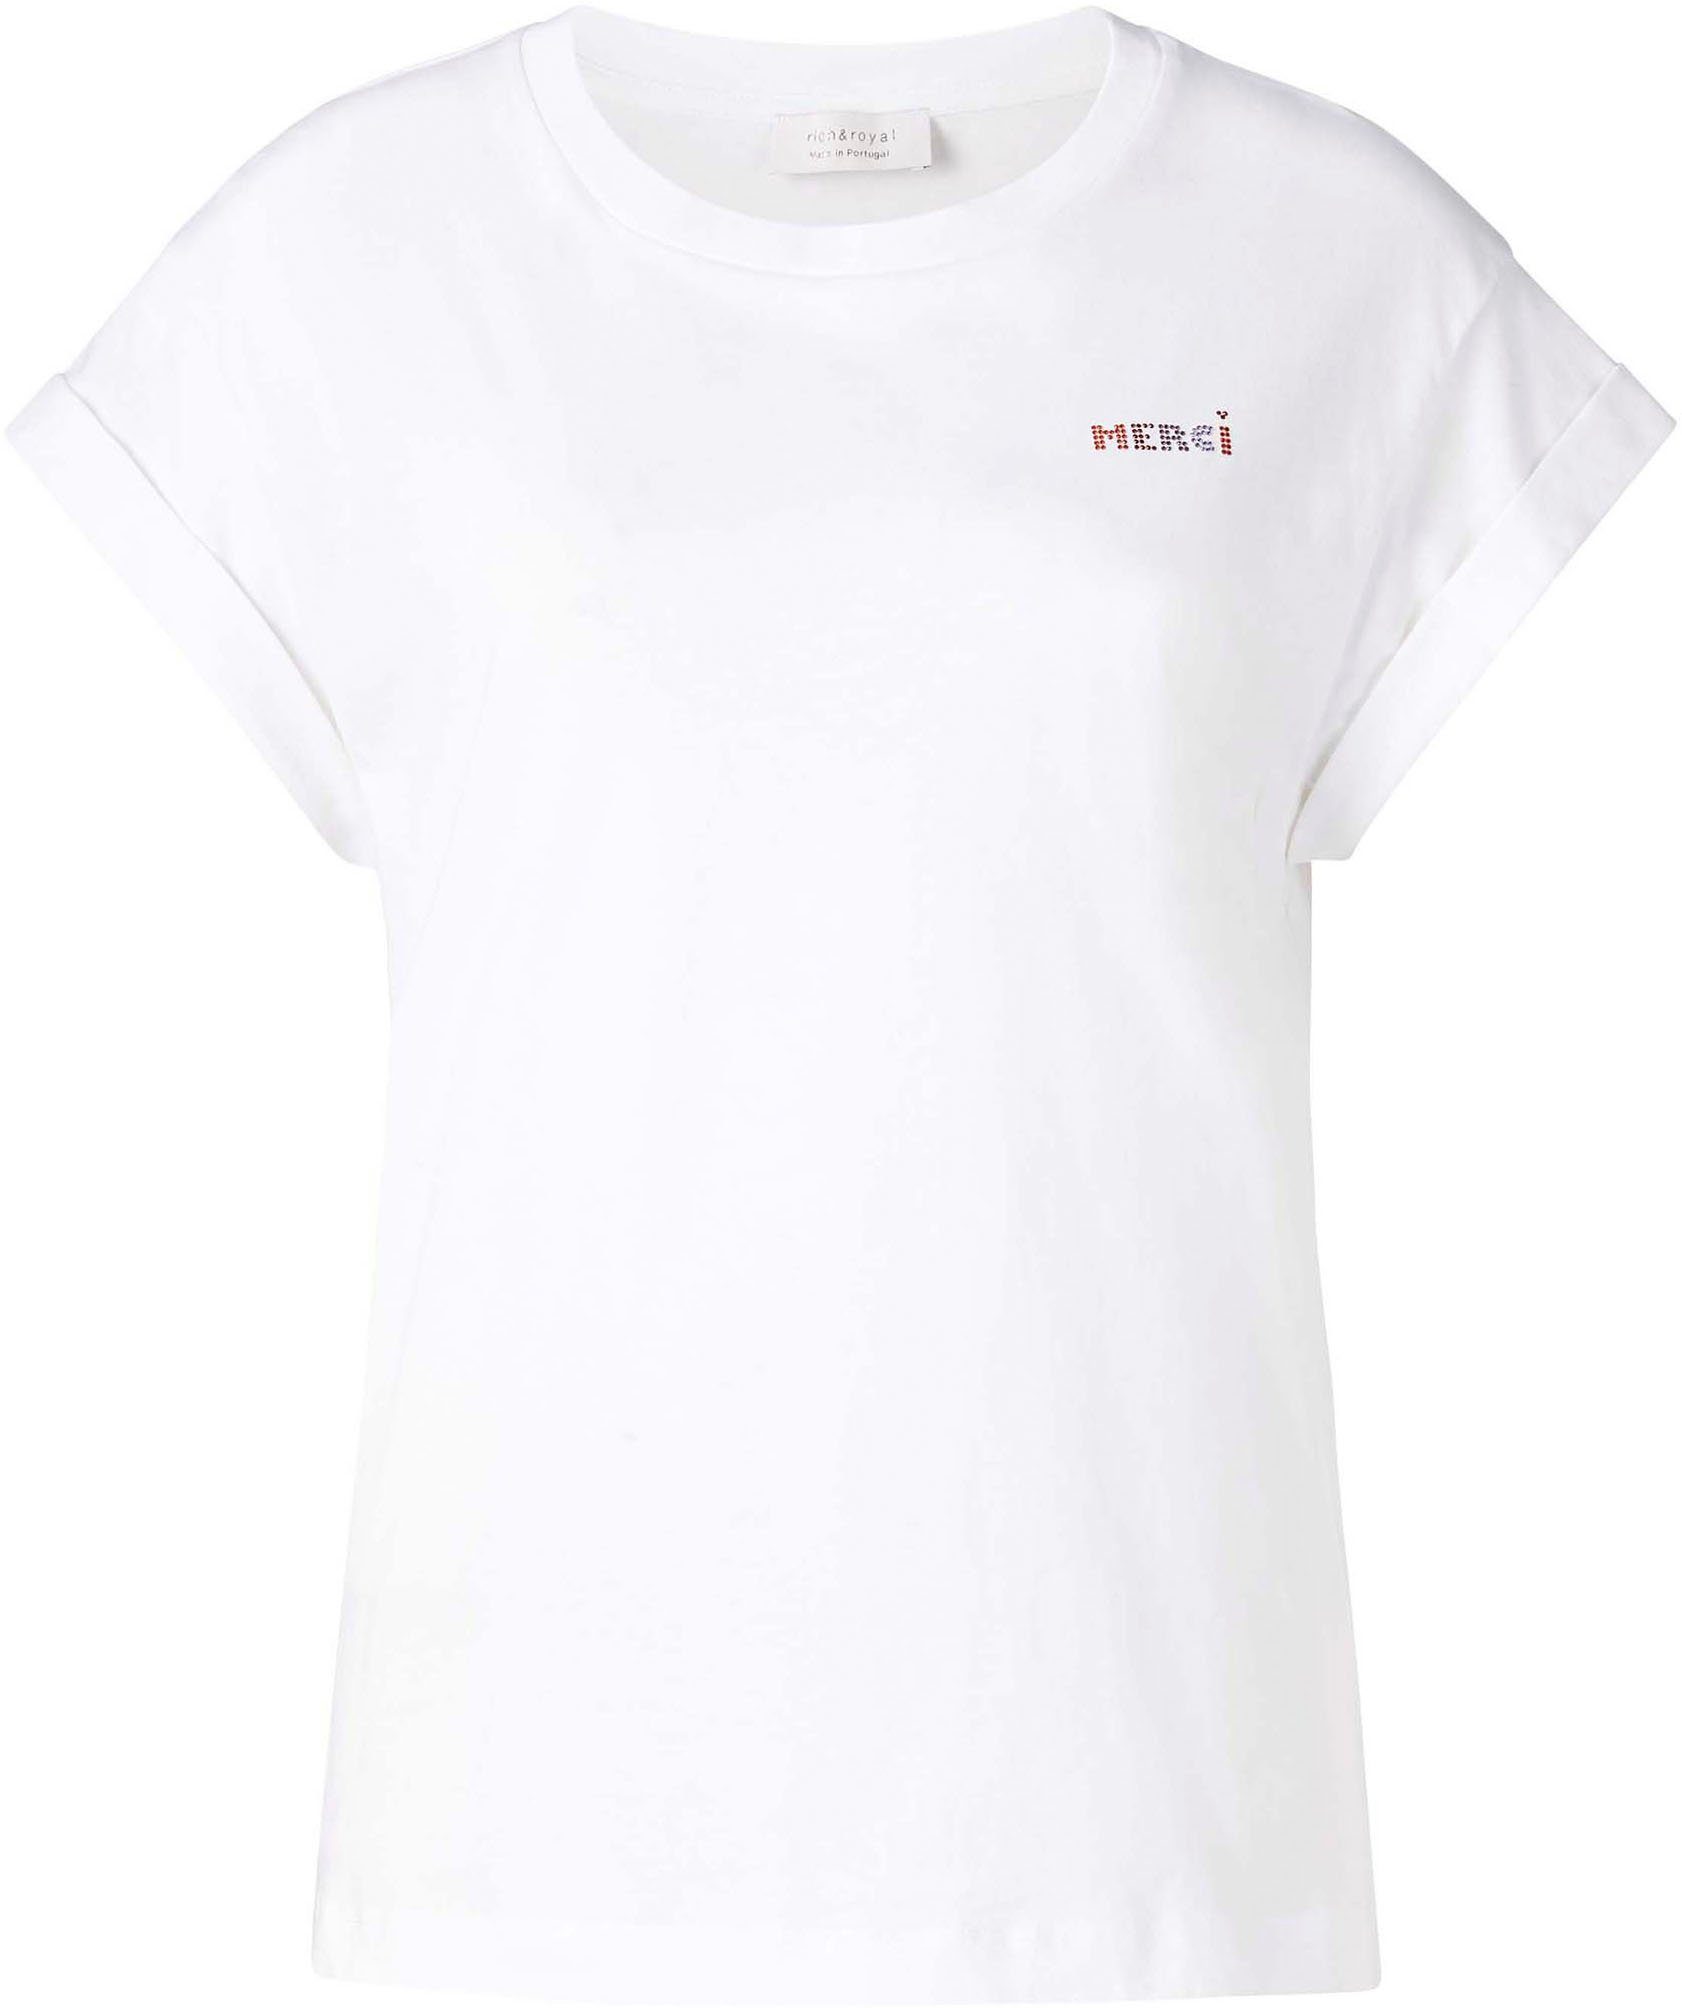 Rich & Royal T-Shirt Brusthöhe weiß Glitzer-Print mit in original